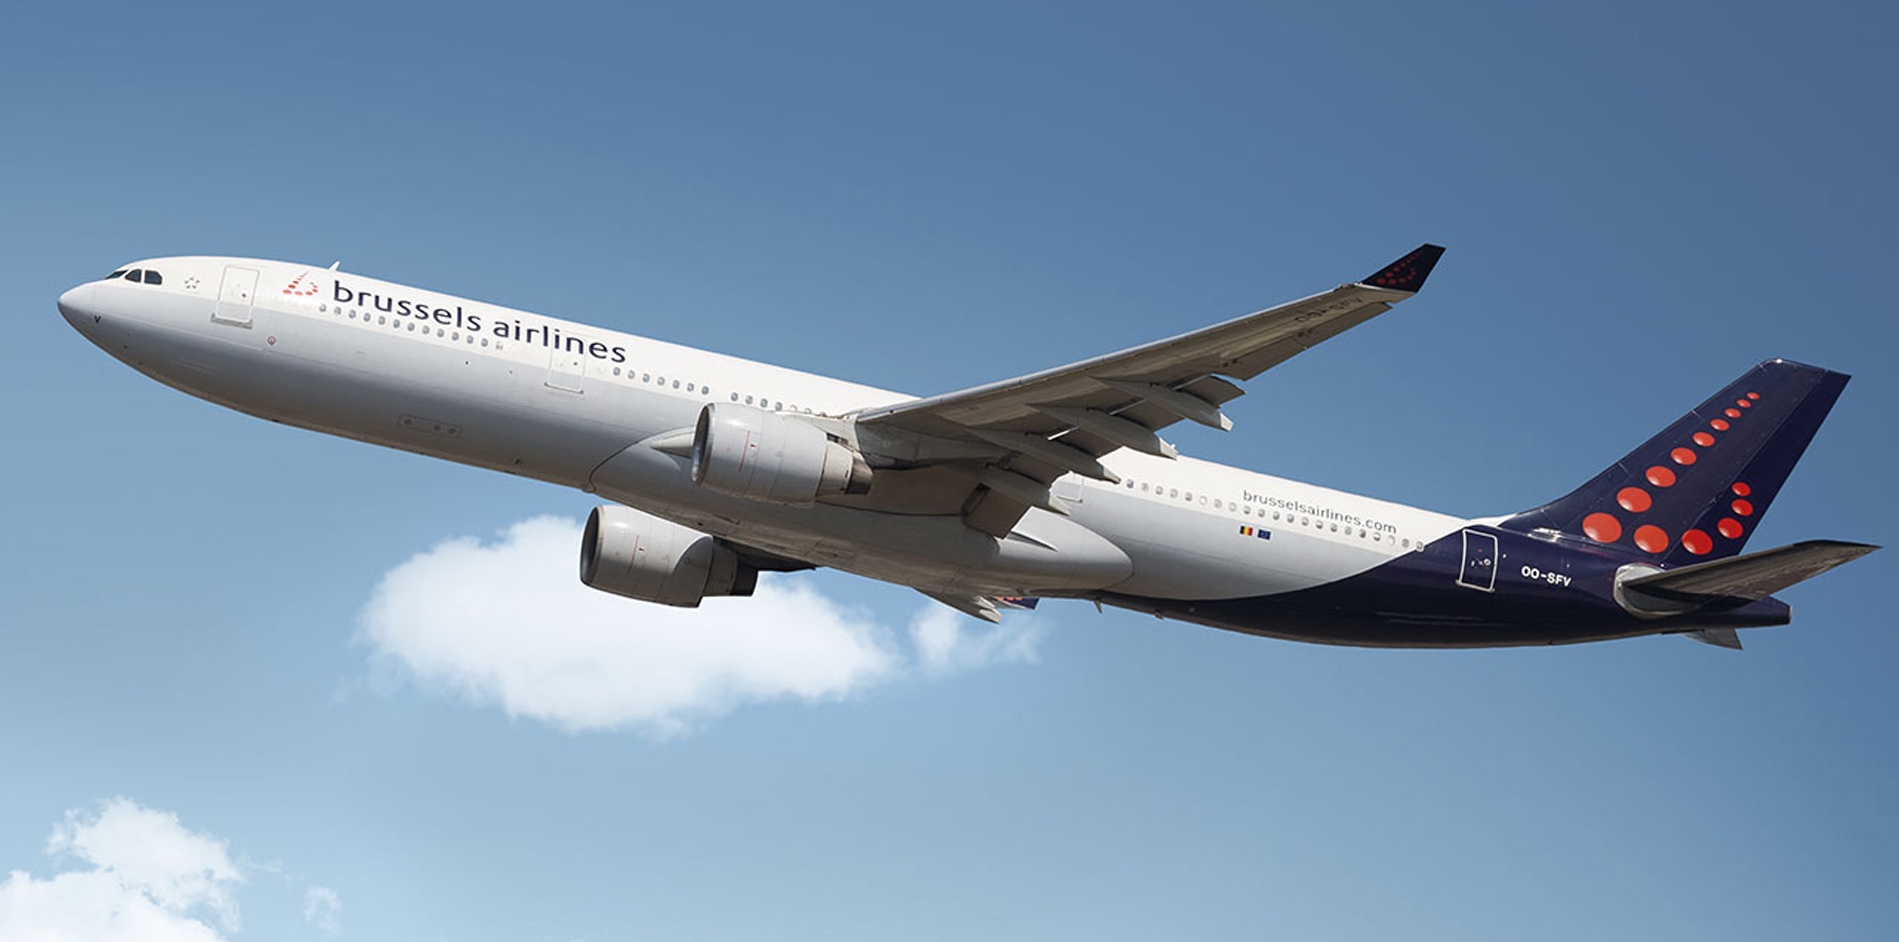 Brussels Airlines-ը վերսկսում է կանոնավոր չվերթներ իրականացնել դեպի Երևան